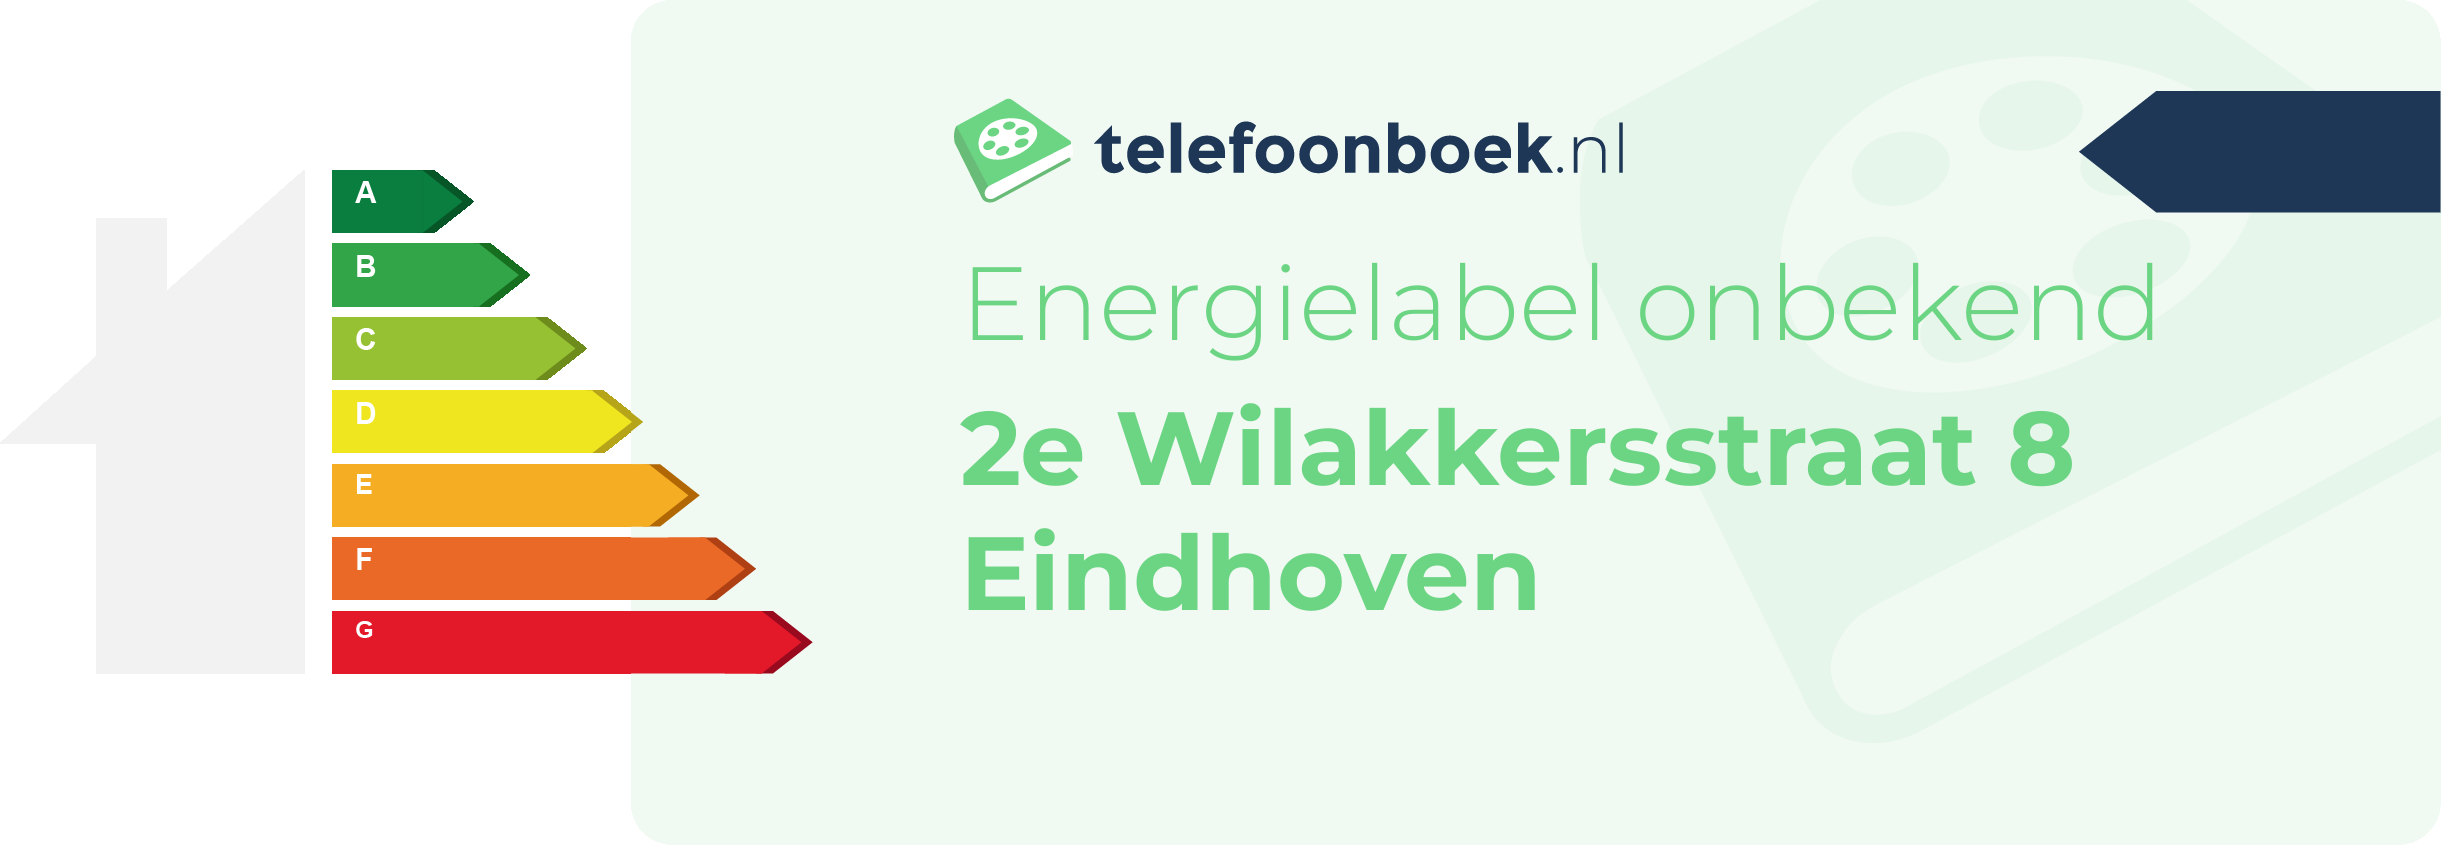 Energielabel 2e Wilakkersstraat 8 Eindhoven